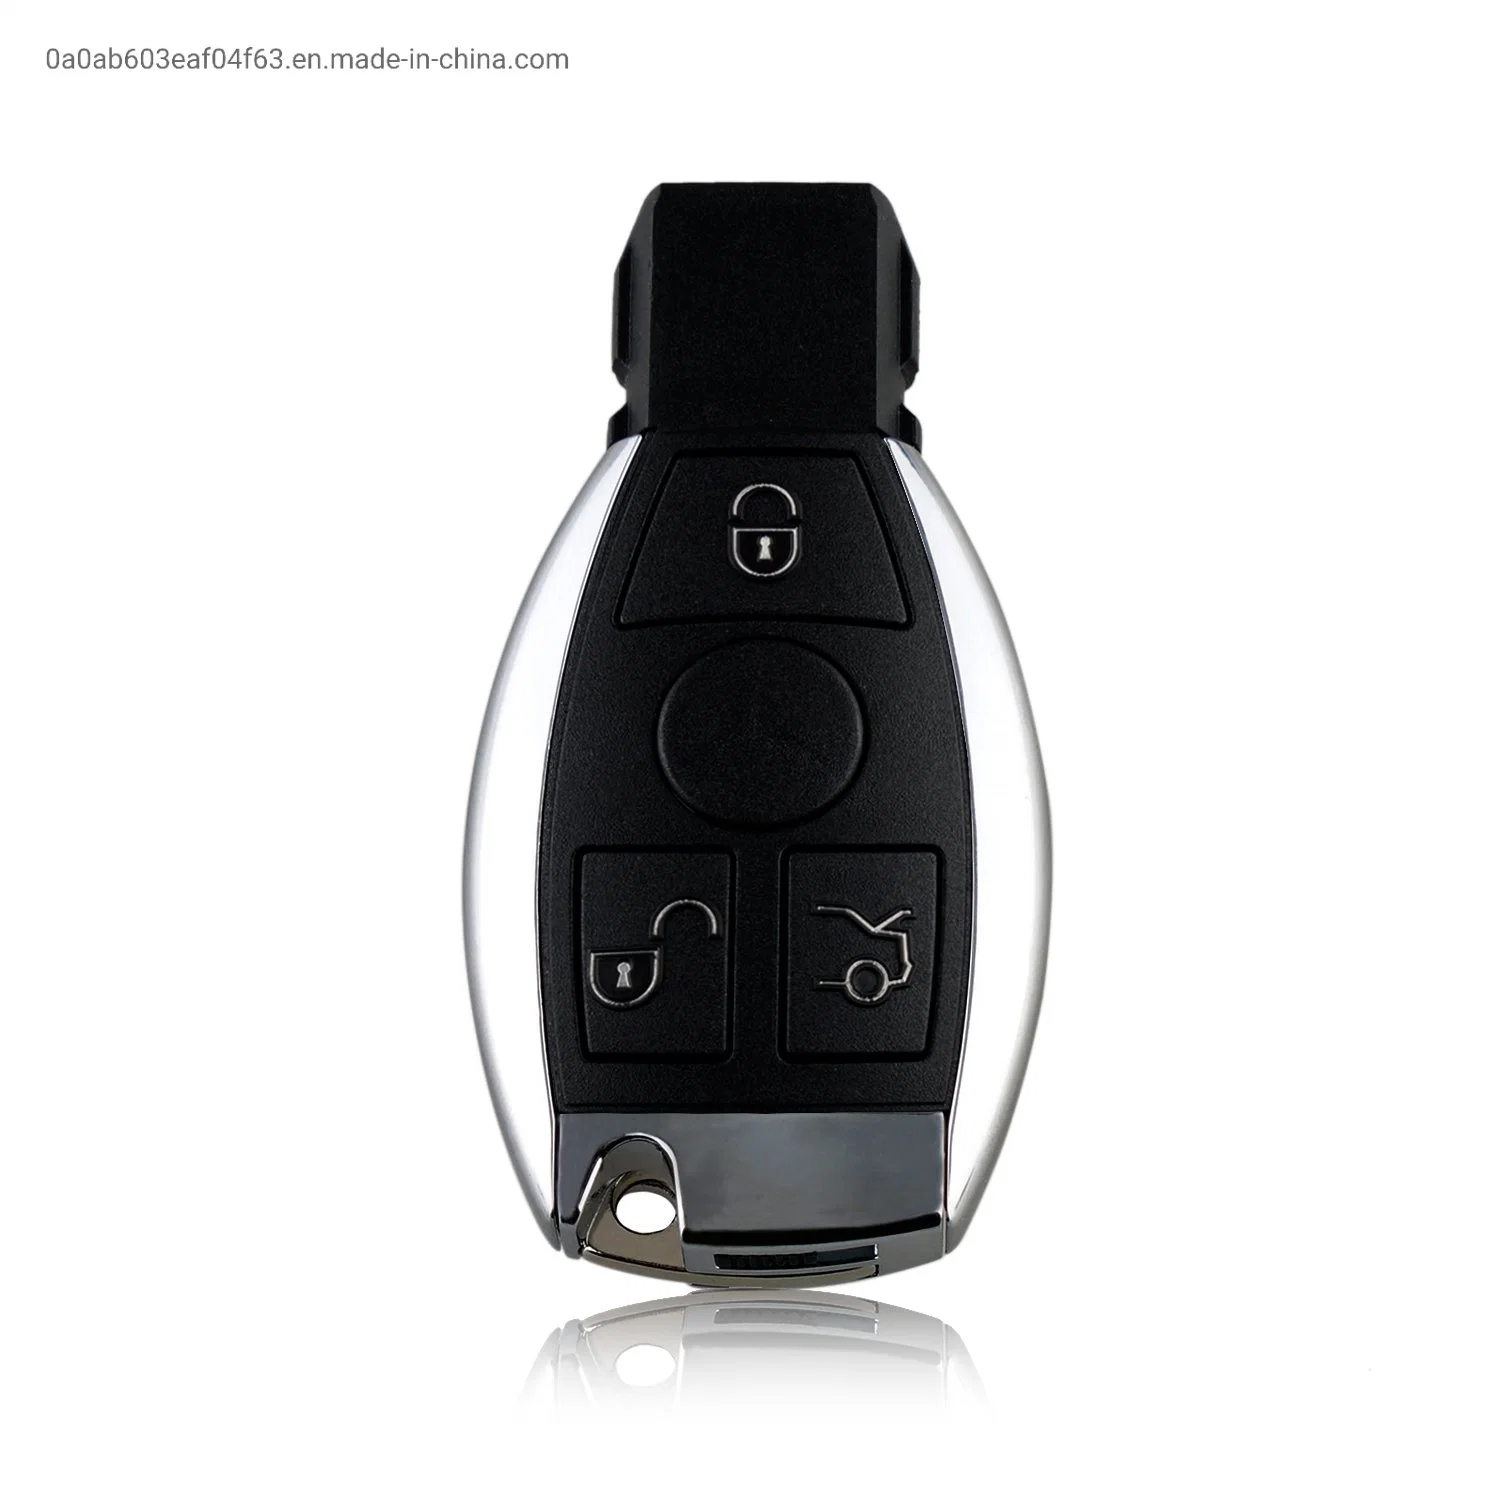 3 Buttons 433 MHZ BGA & NEC Auto Fob Remote Smart Car Key For Mercedes Benz C300 C350 CL500 CL600 CLS CLK GL ML SL